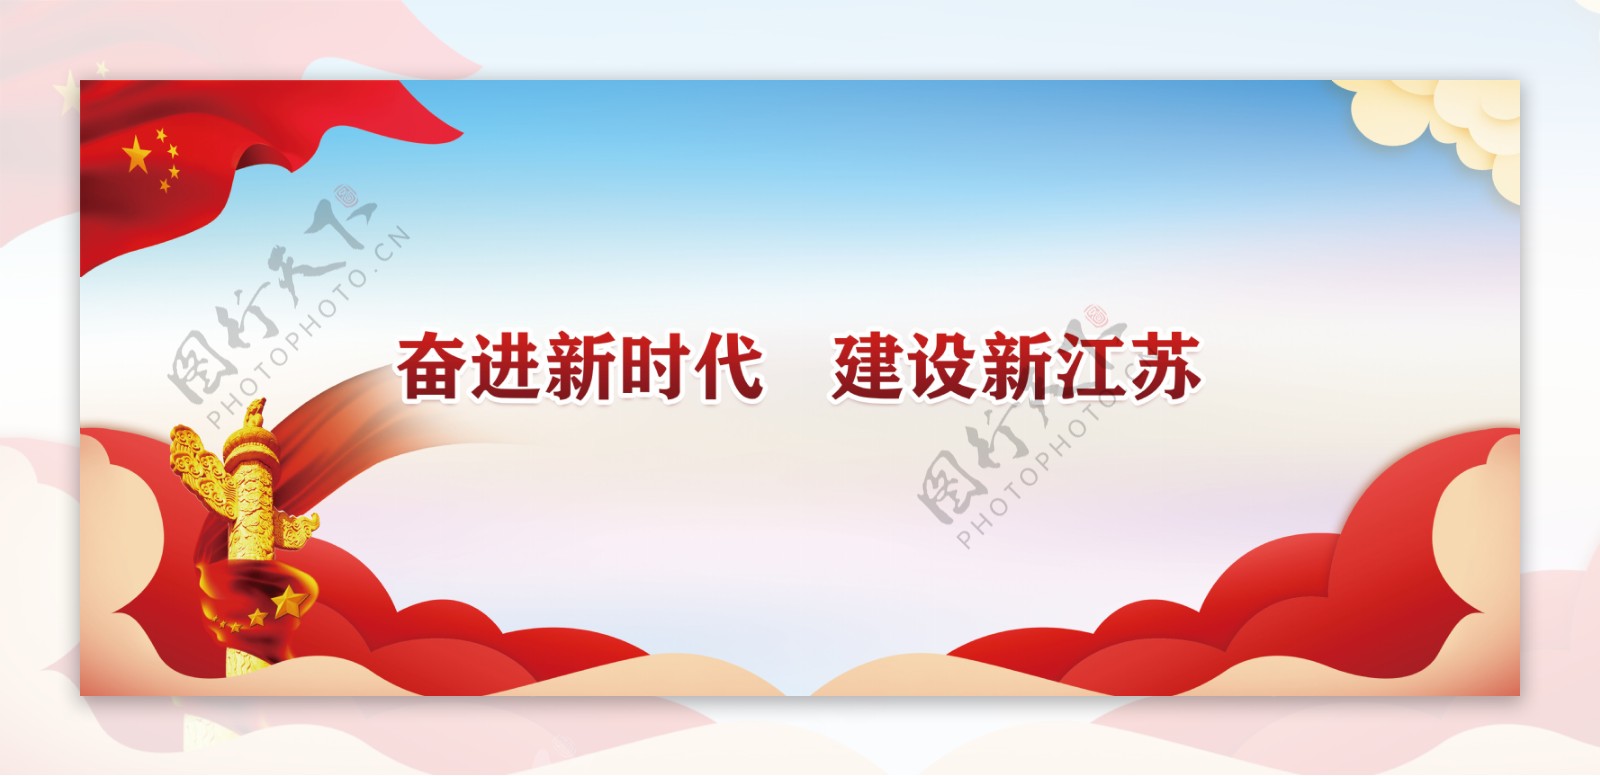 江苏省新中国成立70周年公益宣传图